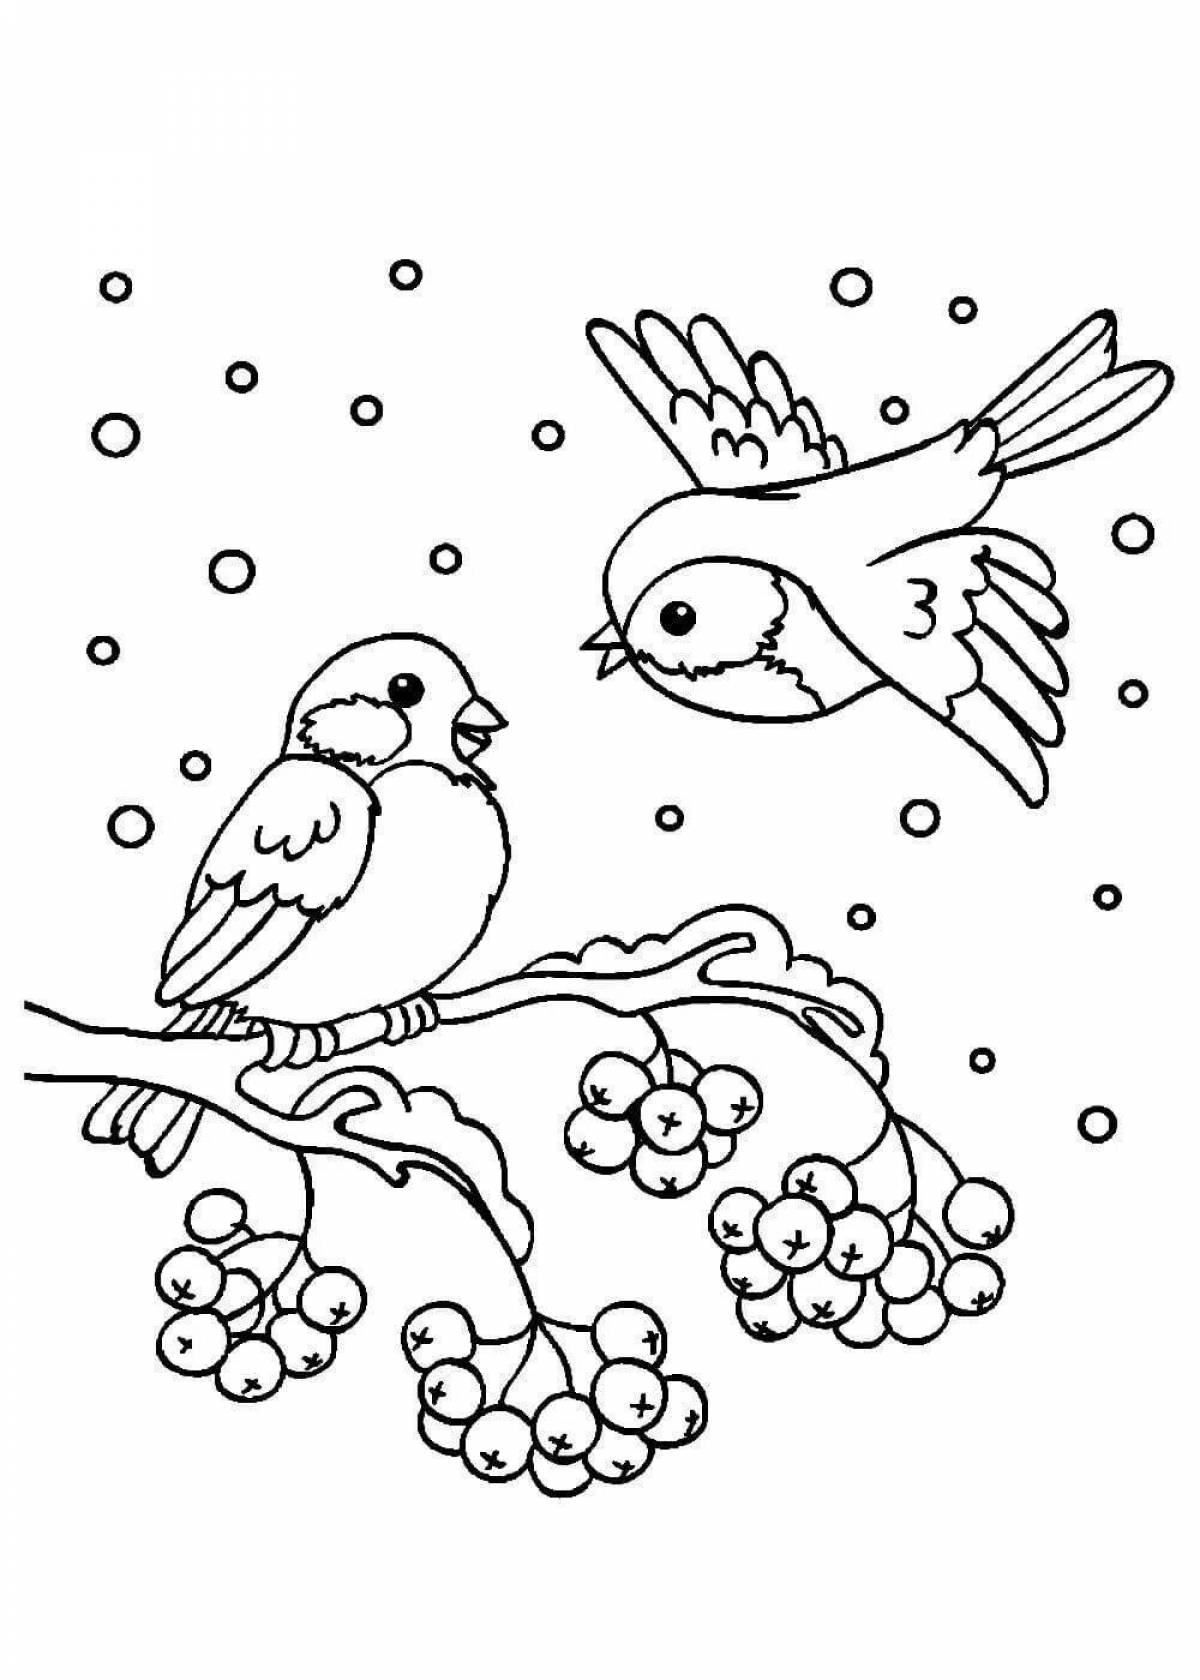 Изысканная раскраска зимующих птиц для детей 2-3 лет